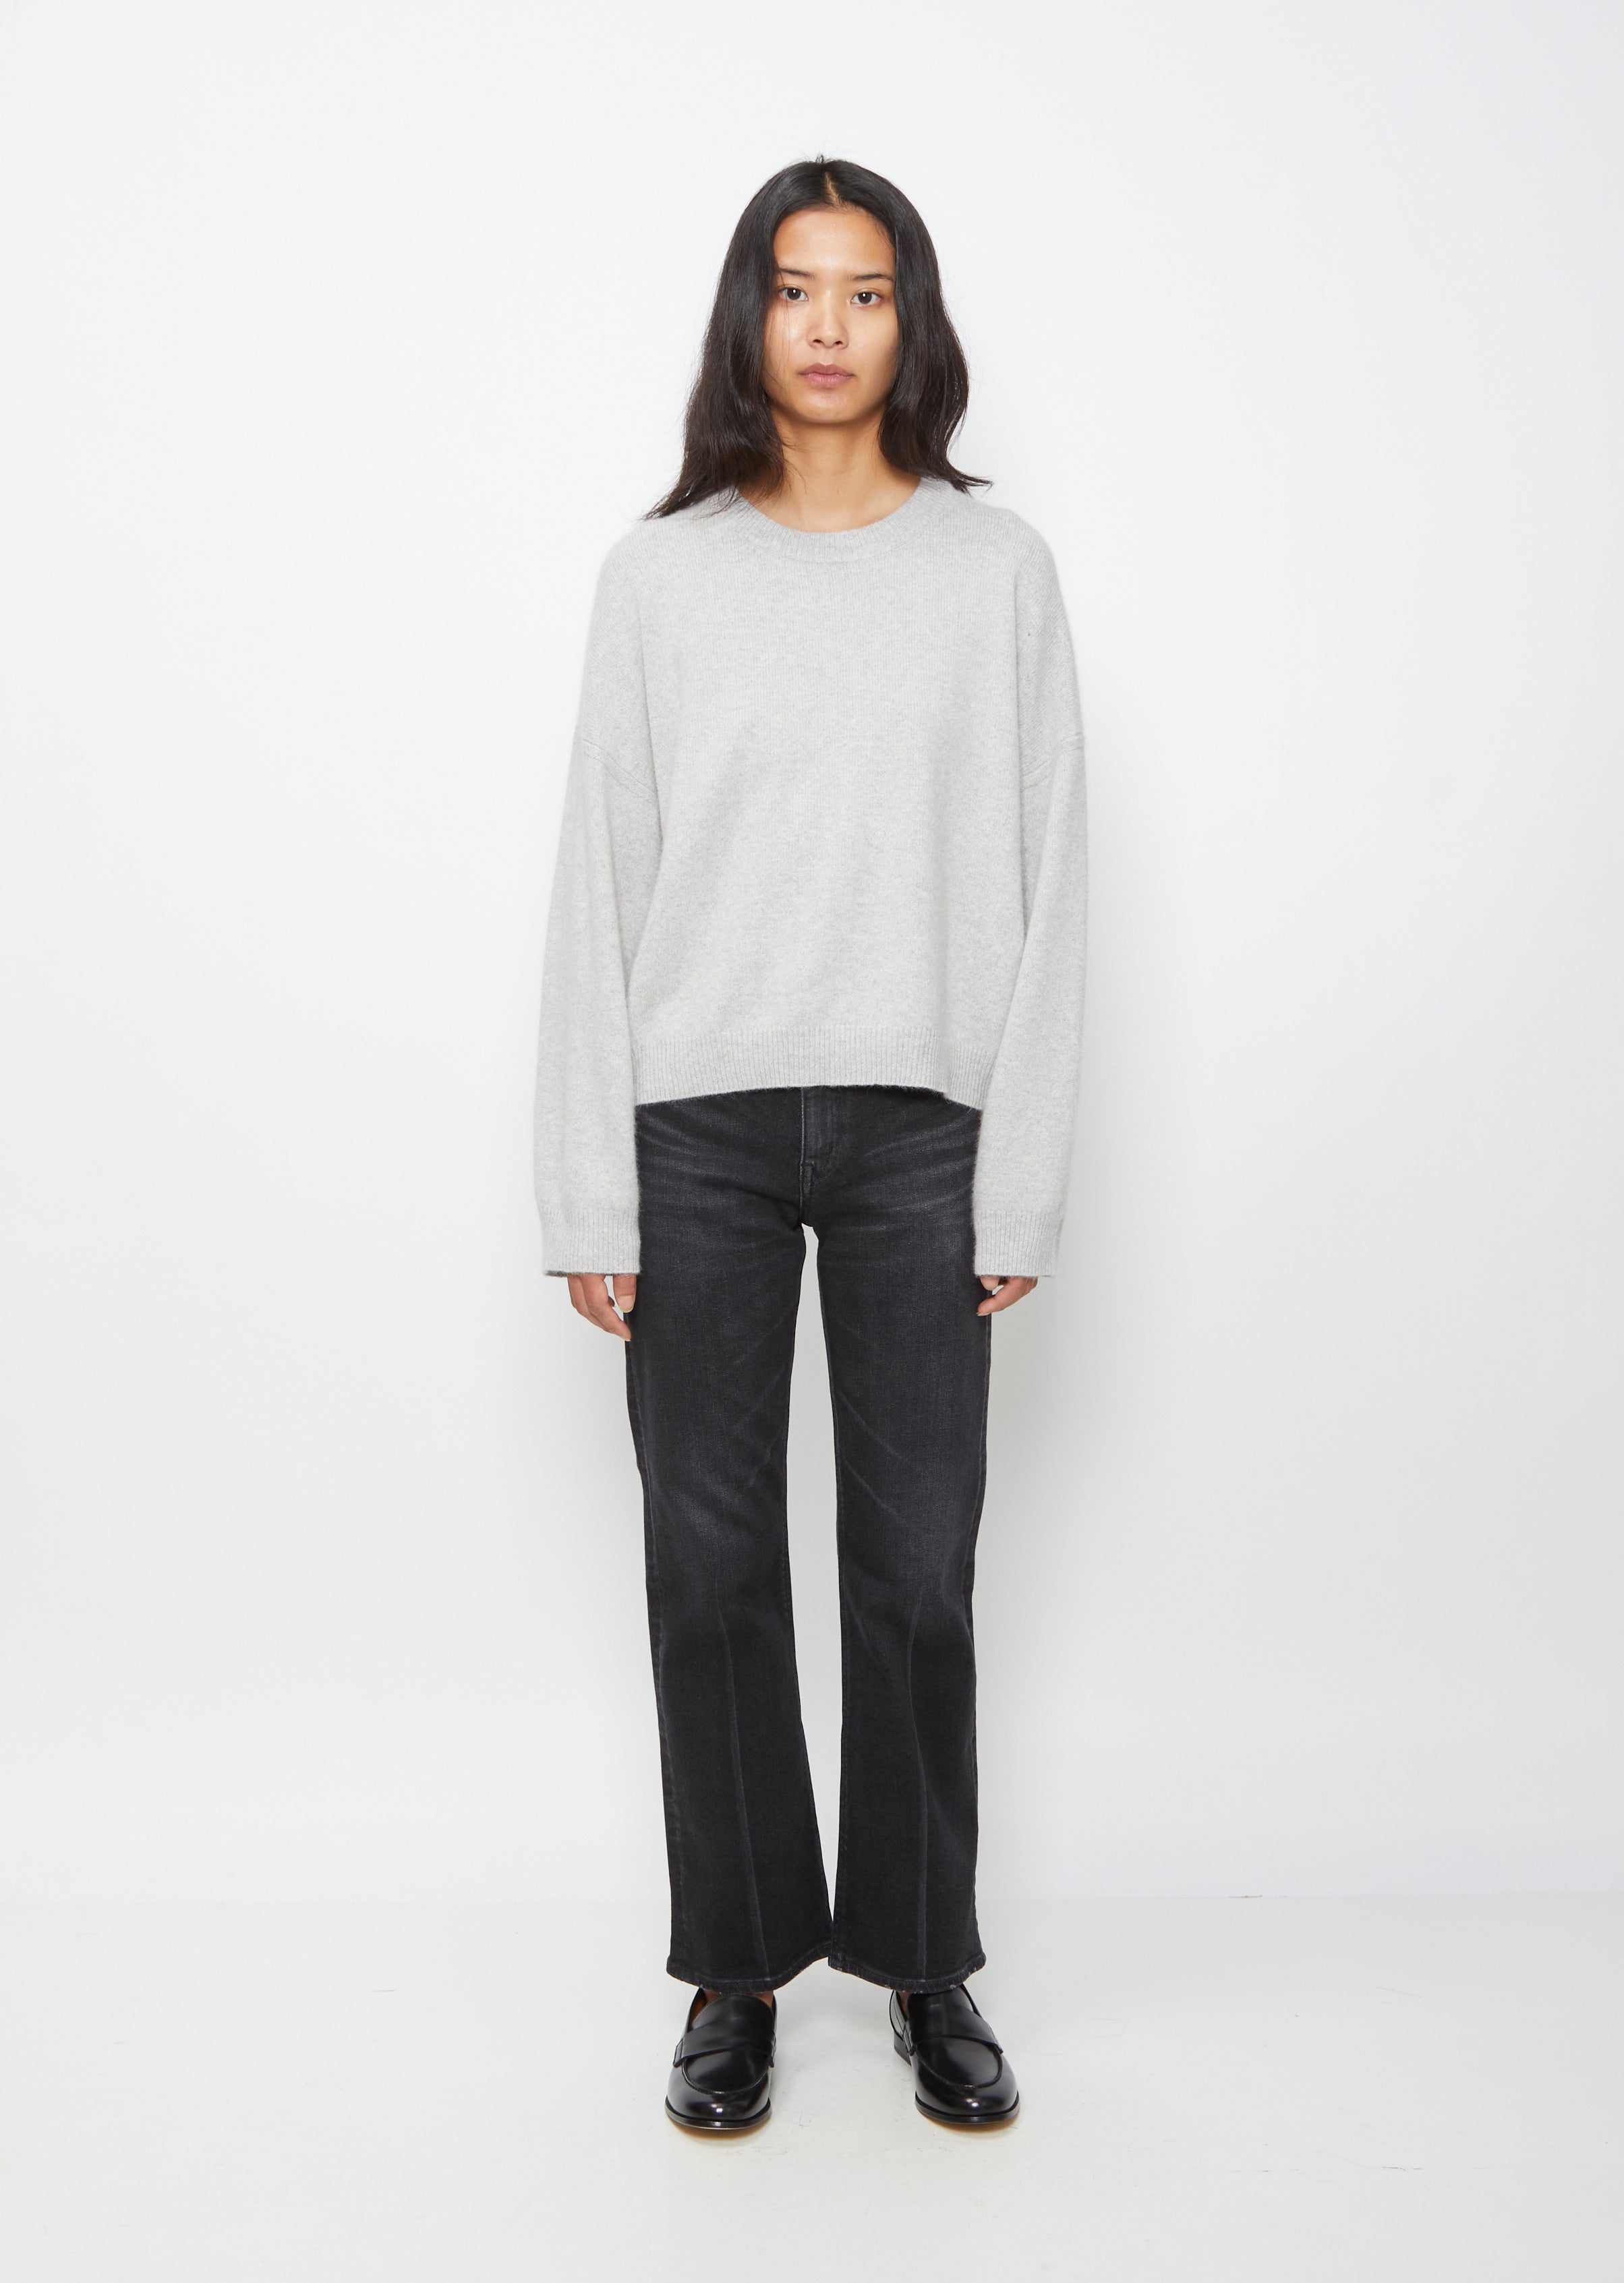 Raye Sweater   Grey